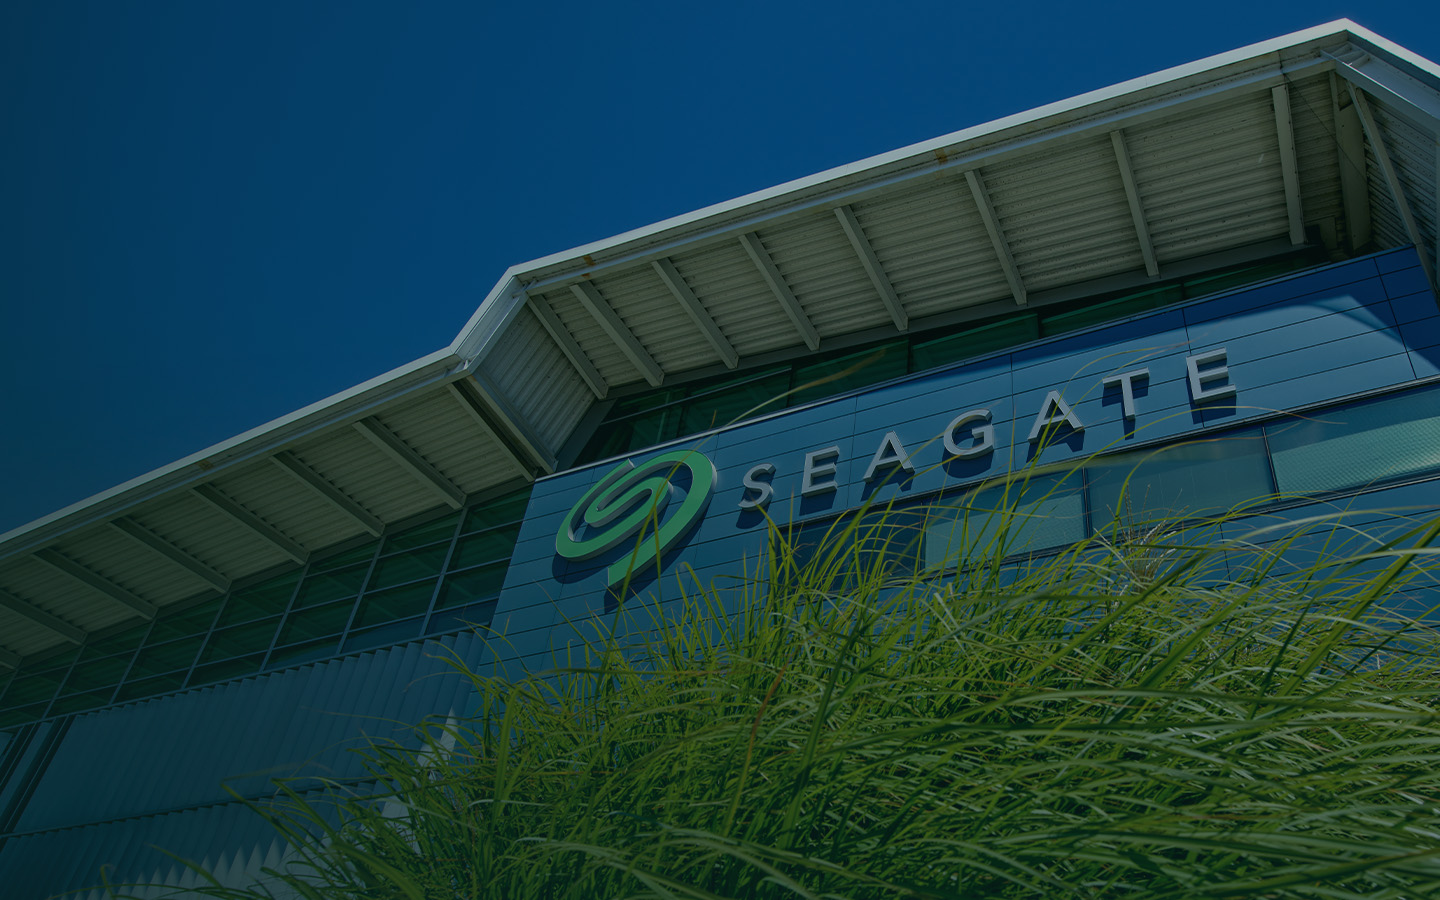 www.seagate.com